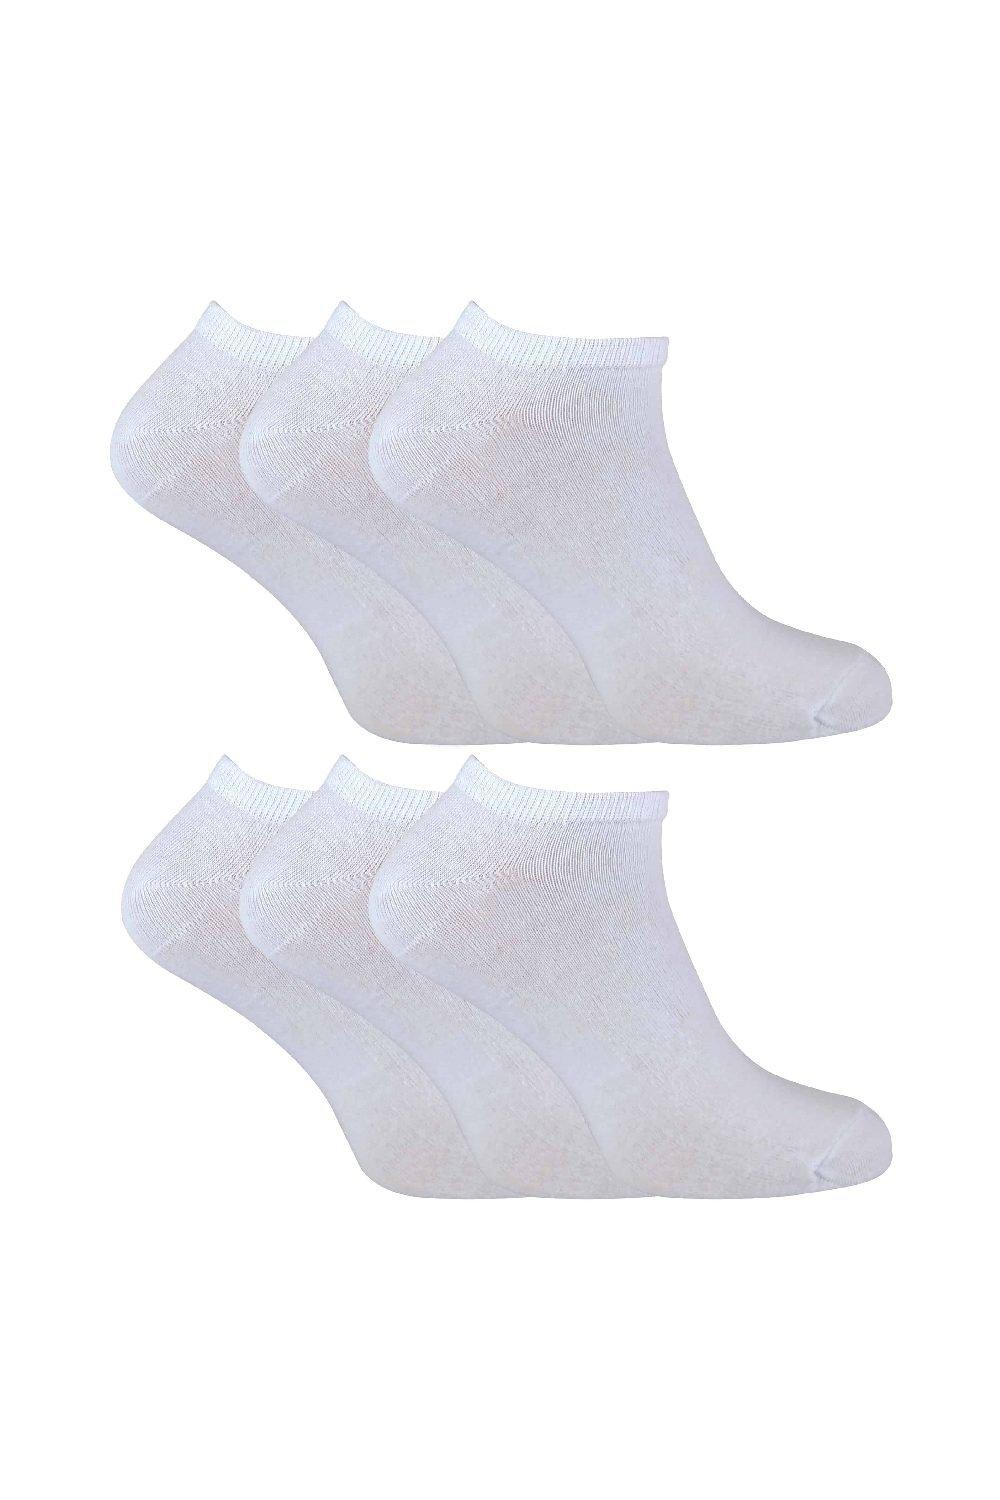 Набор из 6 хлопковых коротких спортивных носков для тренажерного зала Sock Snob, белый набор из 6 хлопковых коротких спортивных носков для тренажерного зала sock snob белый